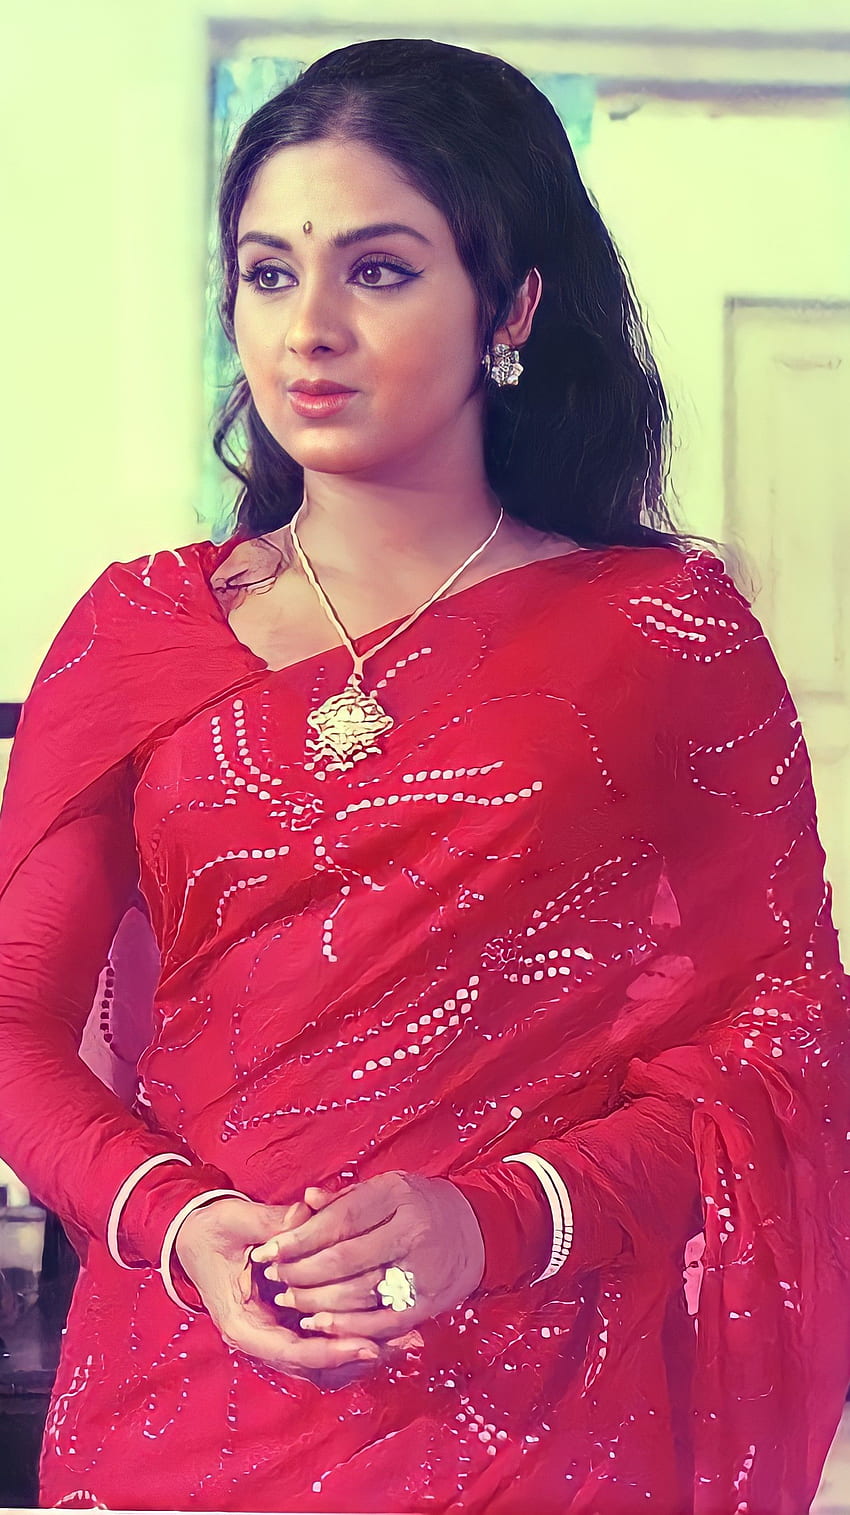 Leena chandavarkar, bollywood actress, vintage HD phone wallpaper | Pxfuel